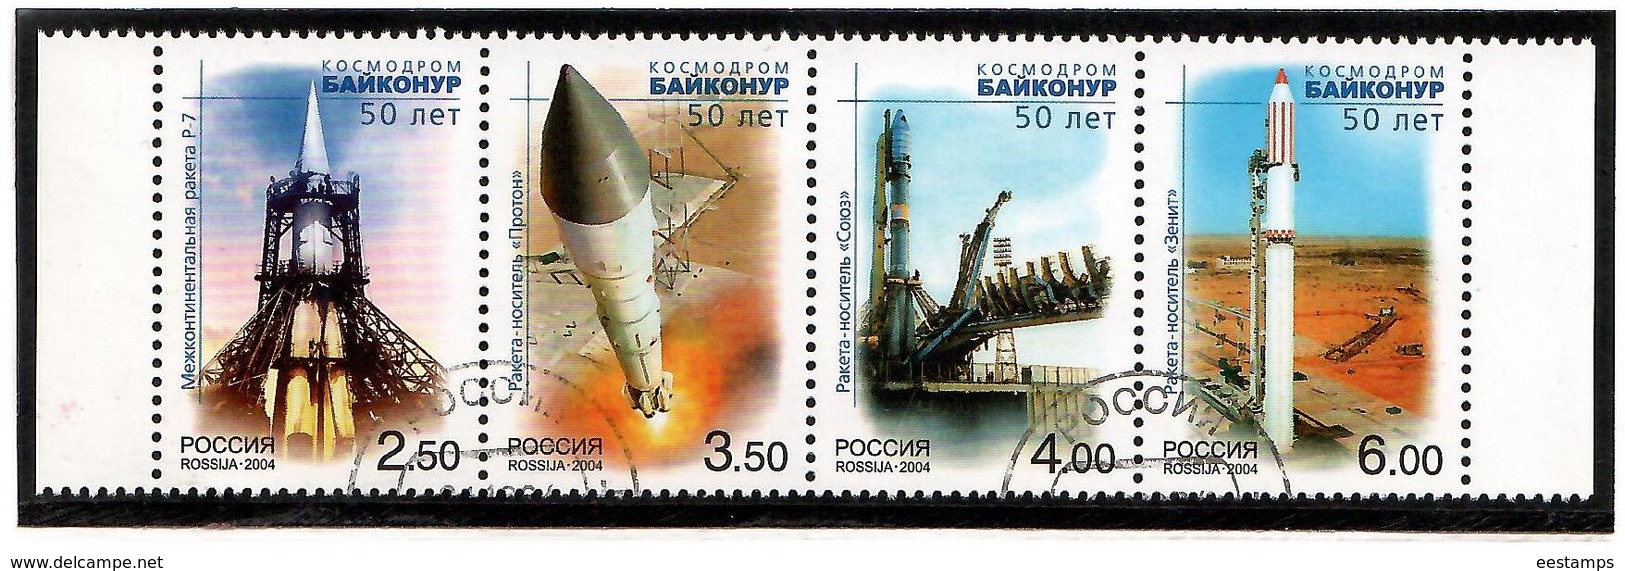 Russia 2004 . Baikonur Cosmodrome. 4v.  Michel # 1220-23  (oo) - Usati